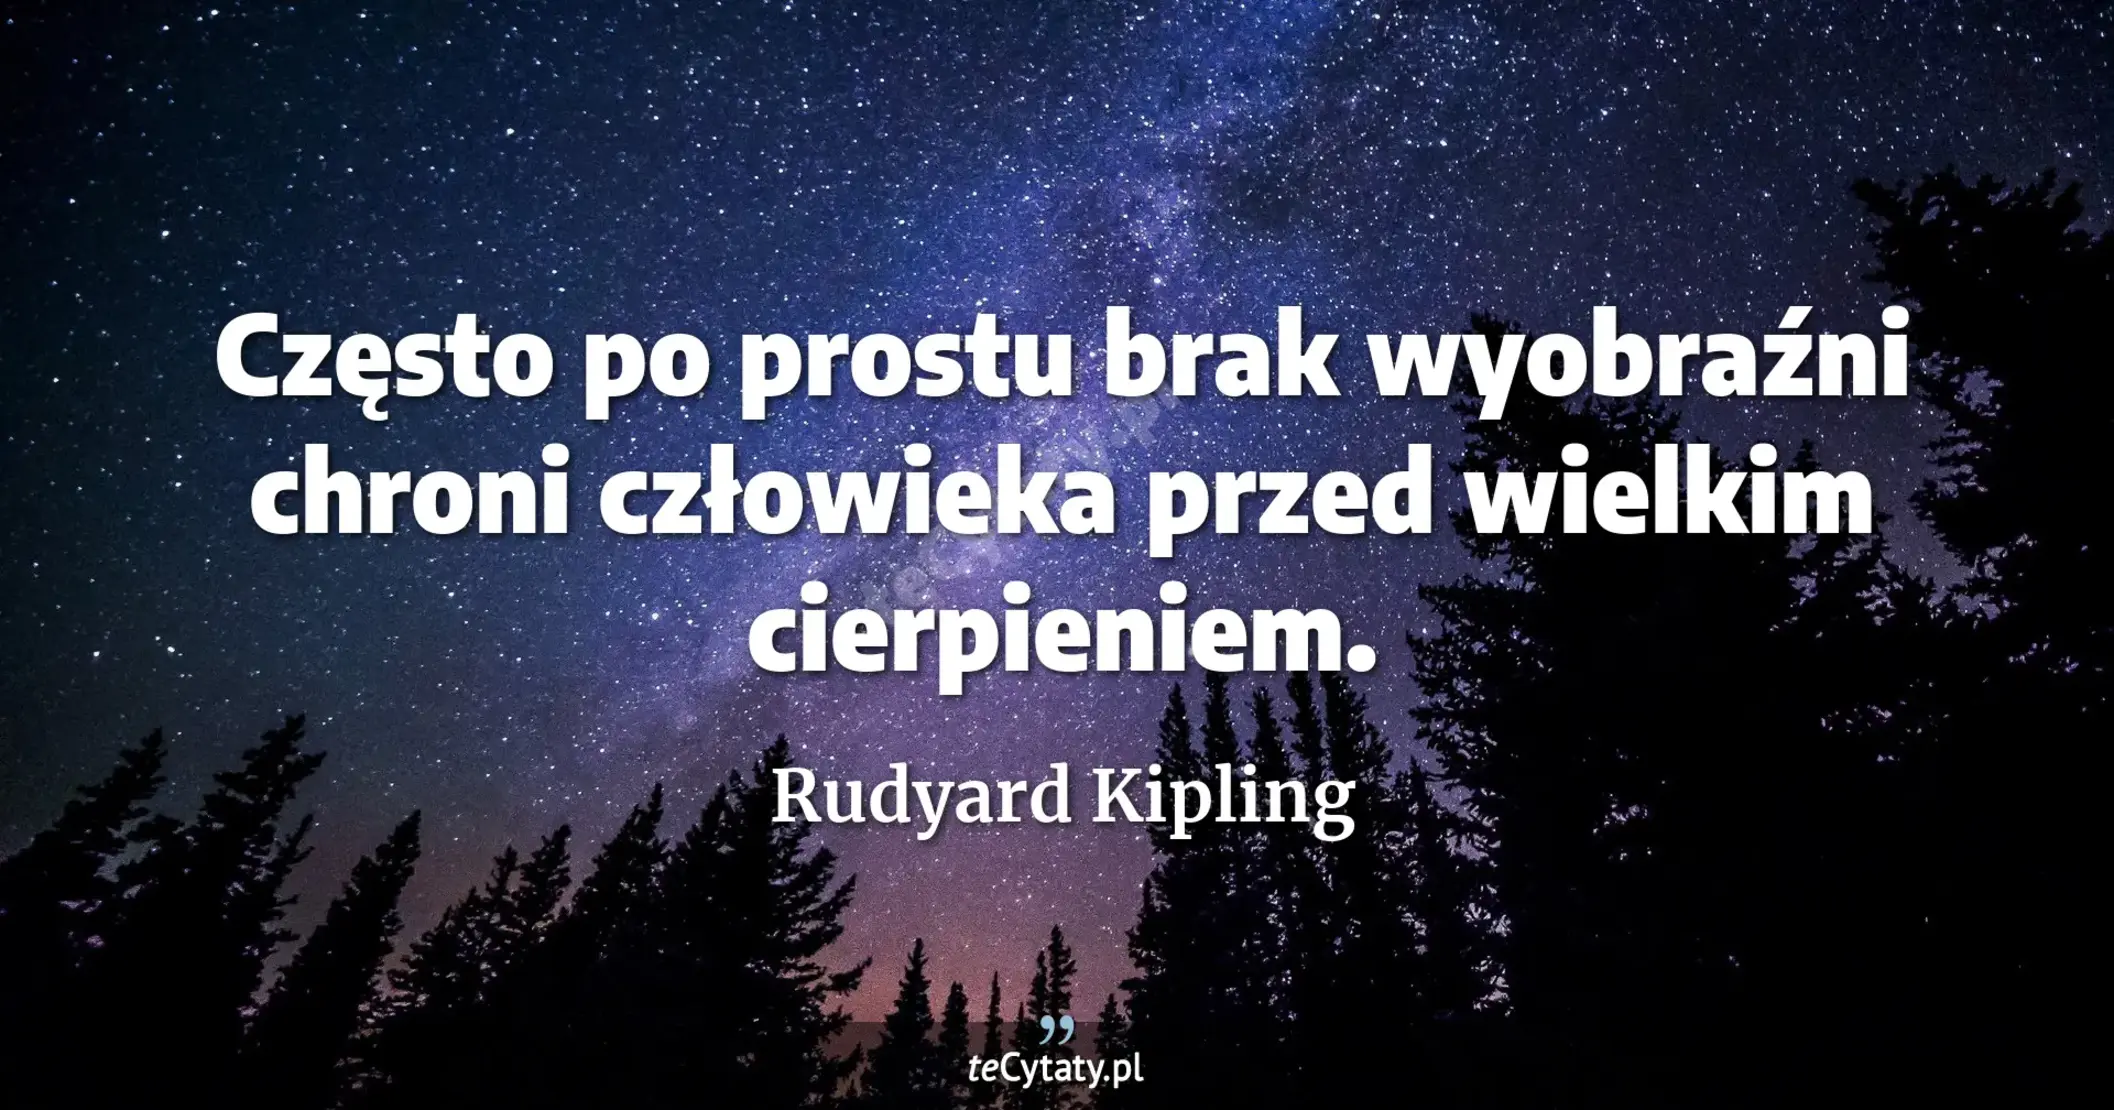 Często po prostu brak wyobraźni chroni człowieka przed wielkim cierpieniem. - Rudyard Kipling